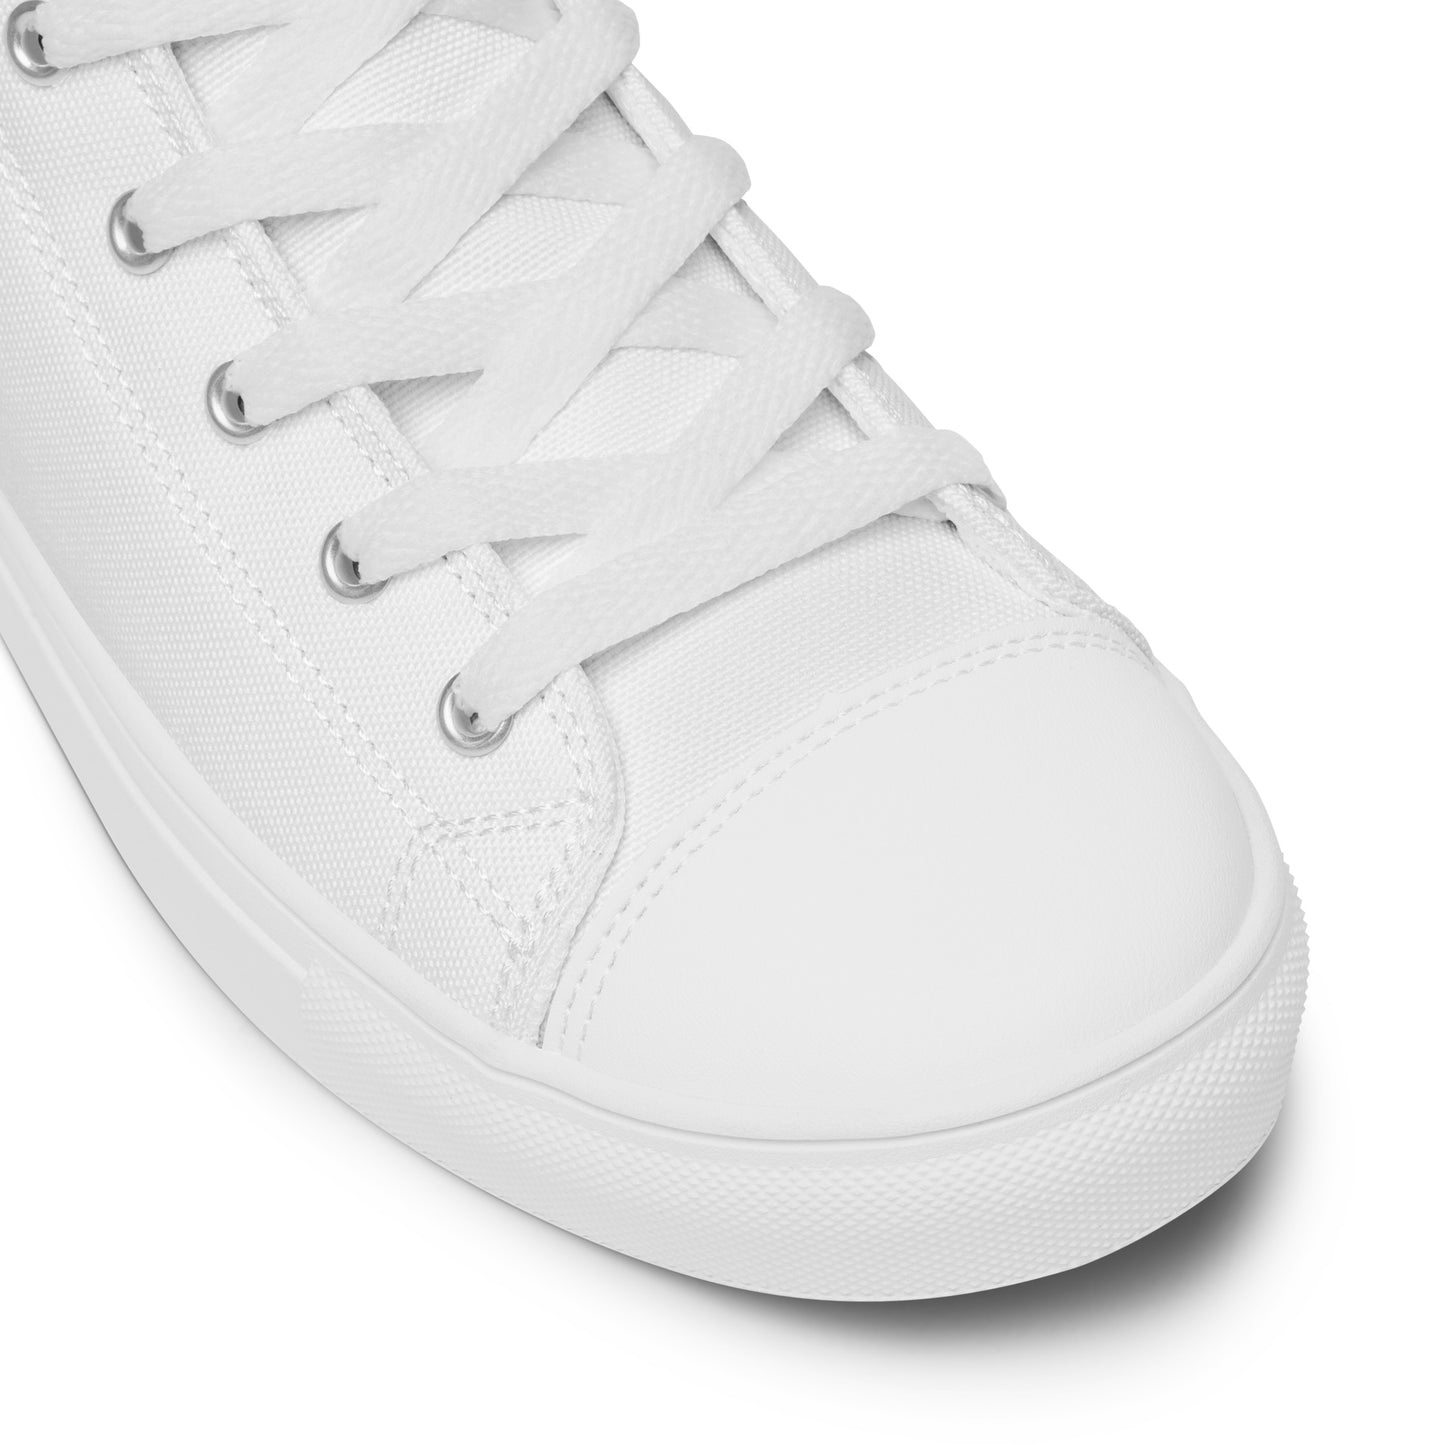 Bianco&Nero - Sneakers Alte in Tela/Donna